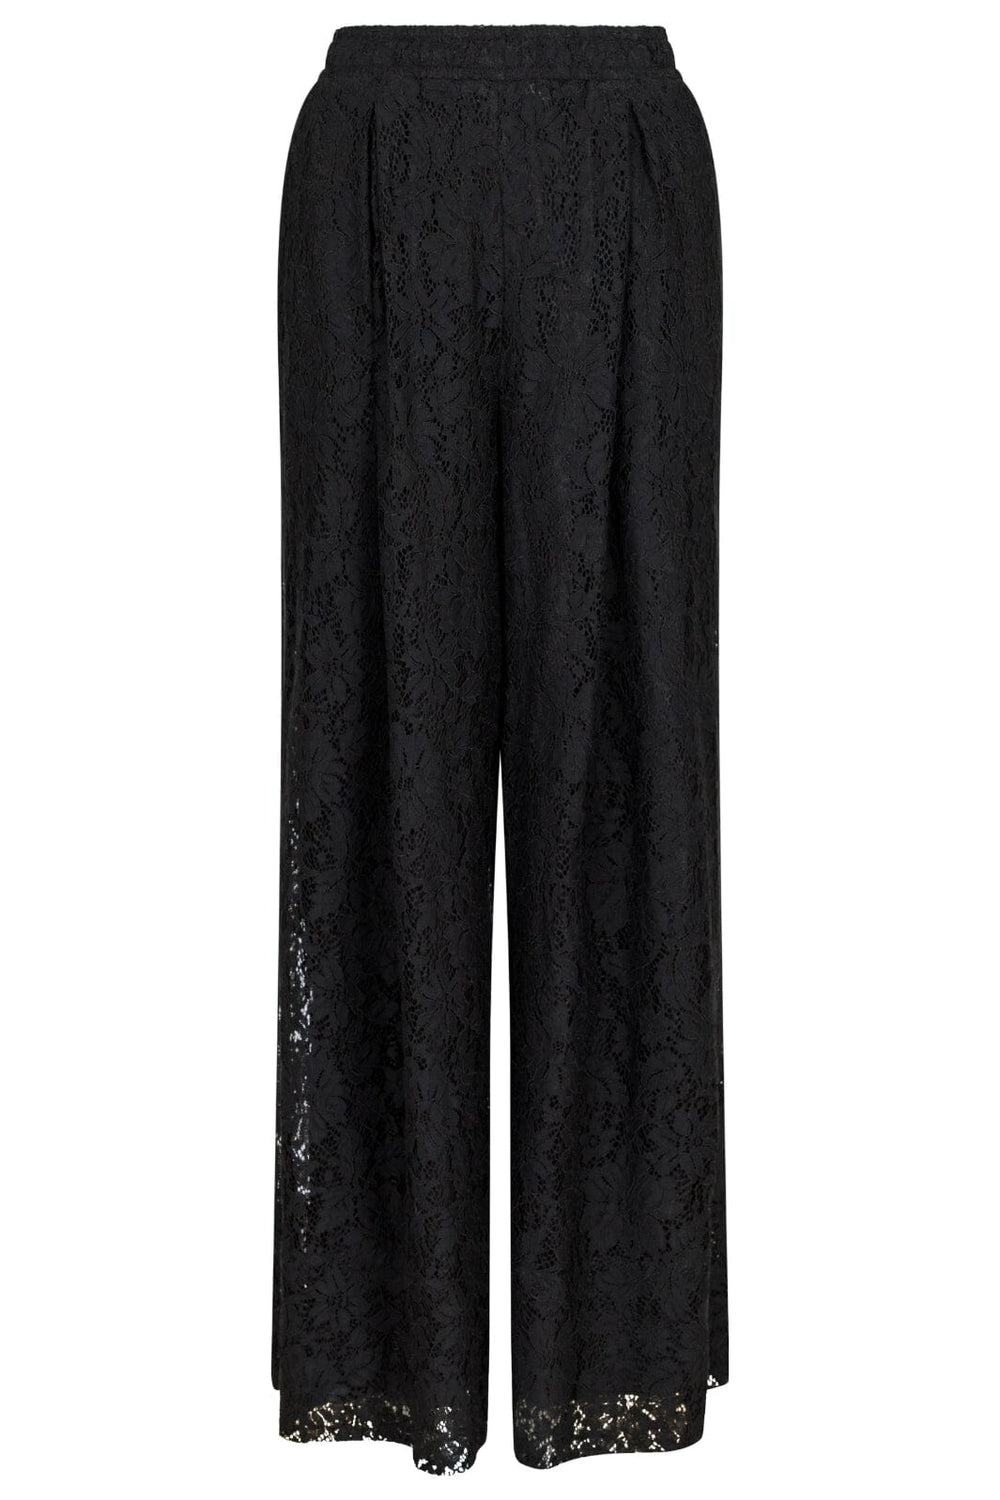 Neo Noir - Madison Lace Pants - Black Bukser 